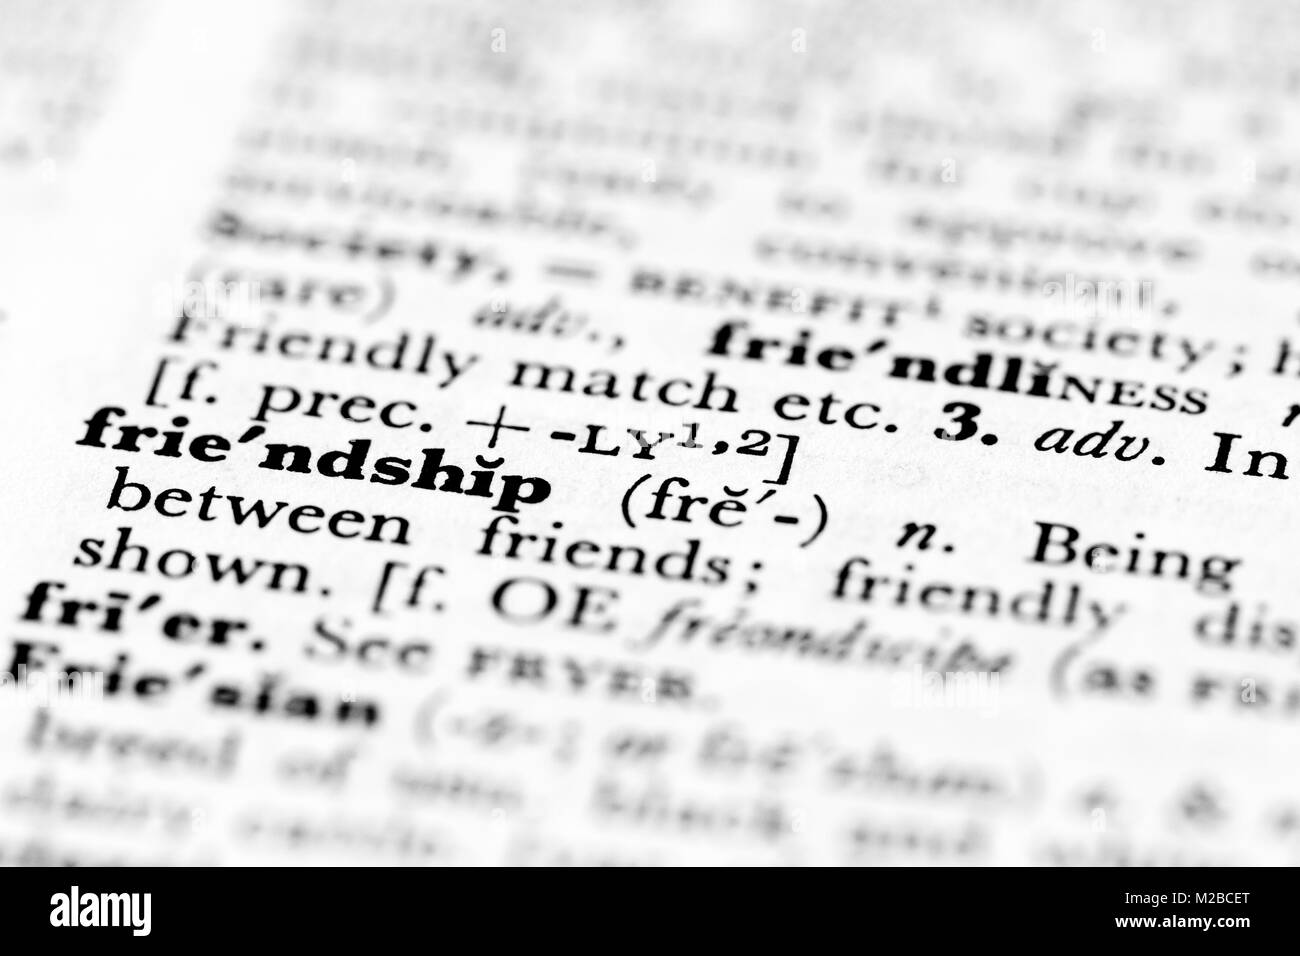 Dictionnaire définition d'amitié, d'anglais, Royaume-Uni Banque D'Images